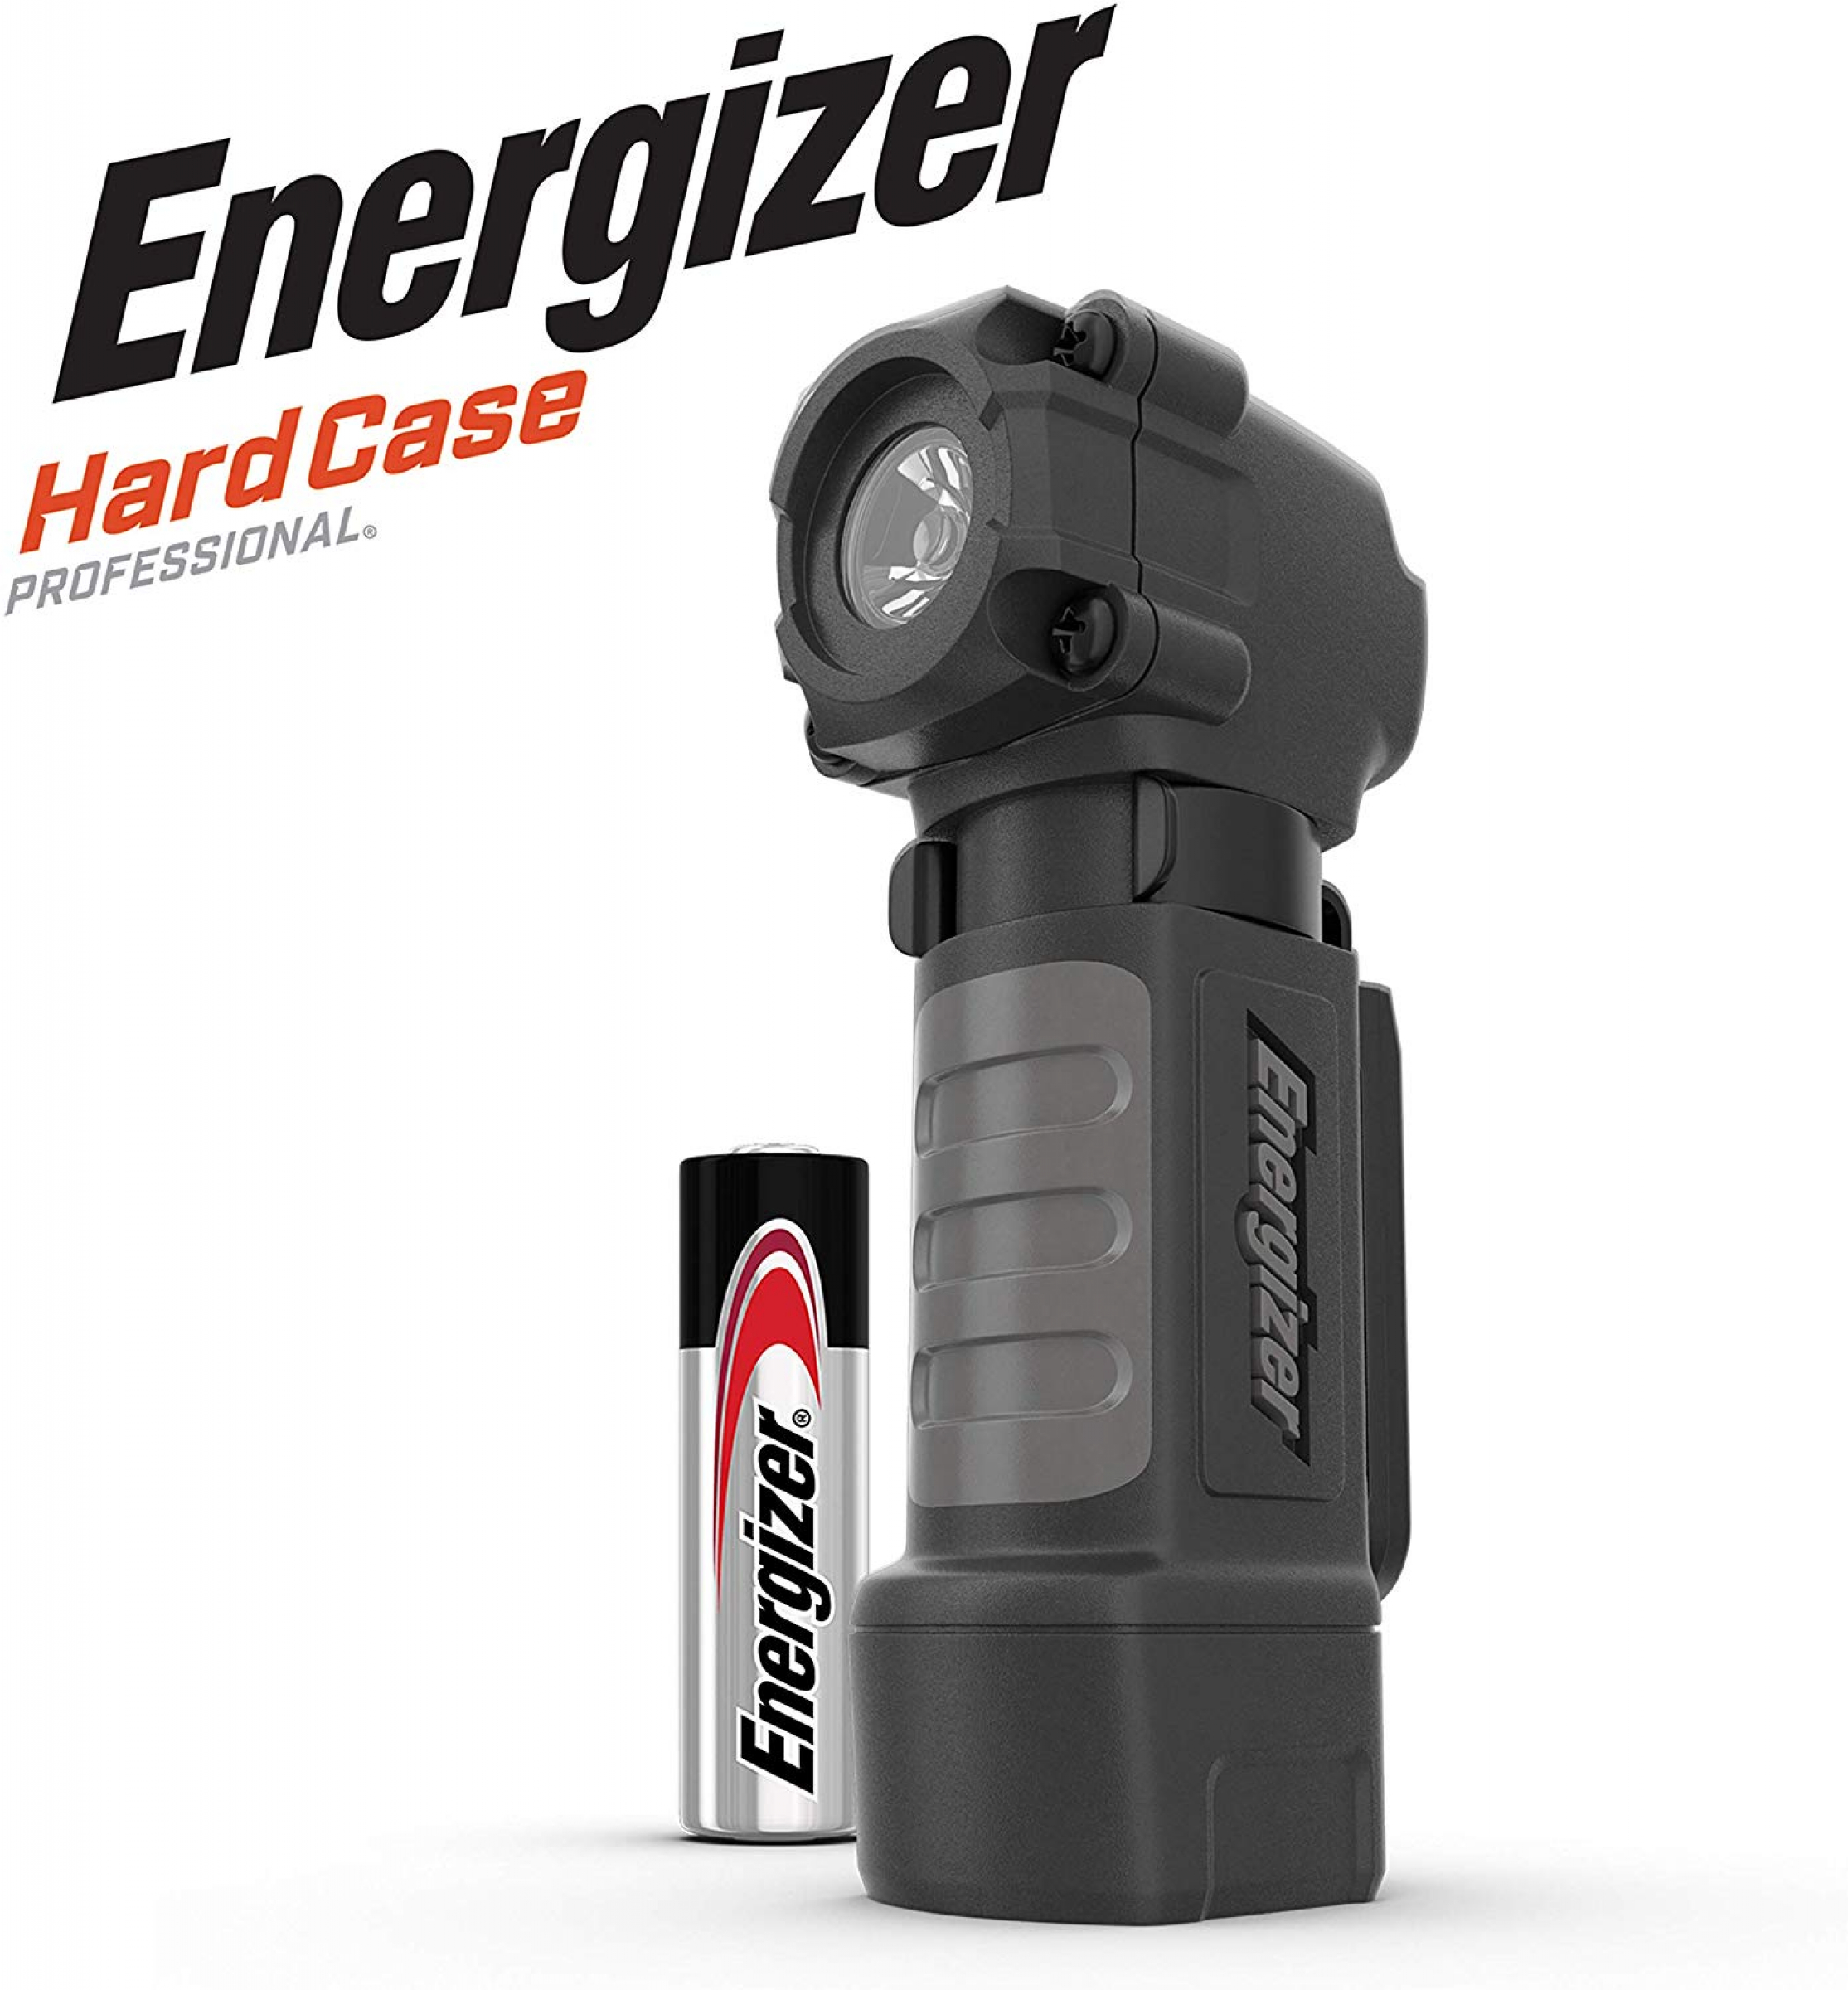 Energizer Pro Hardcase Multi-Use 1 x AA